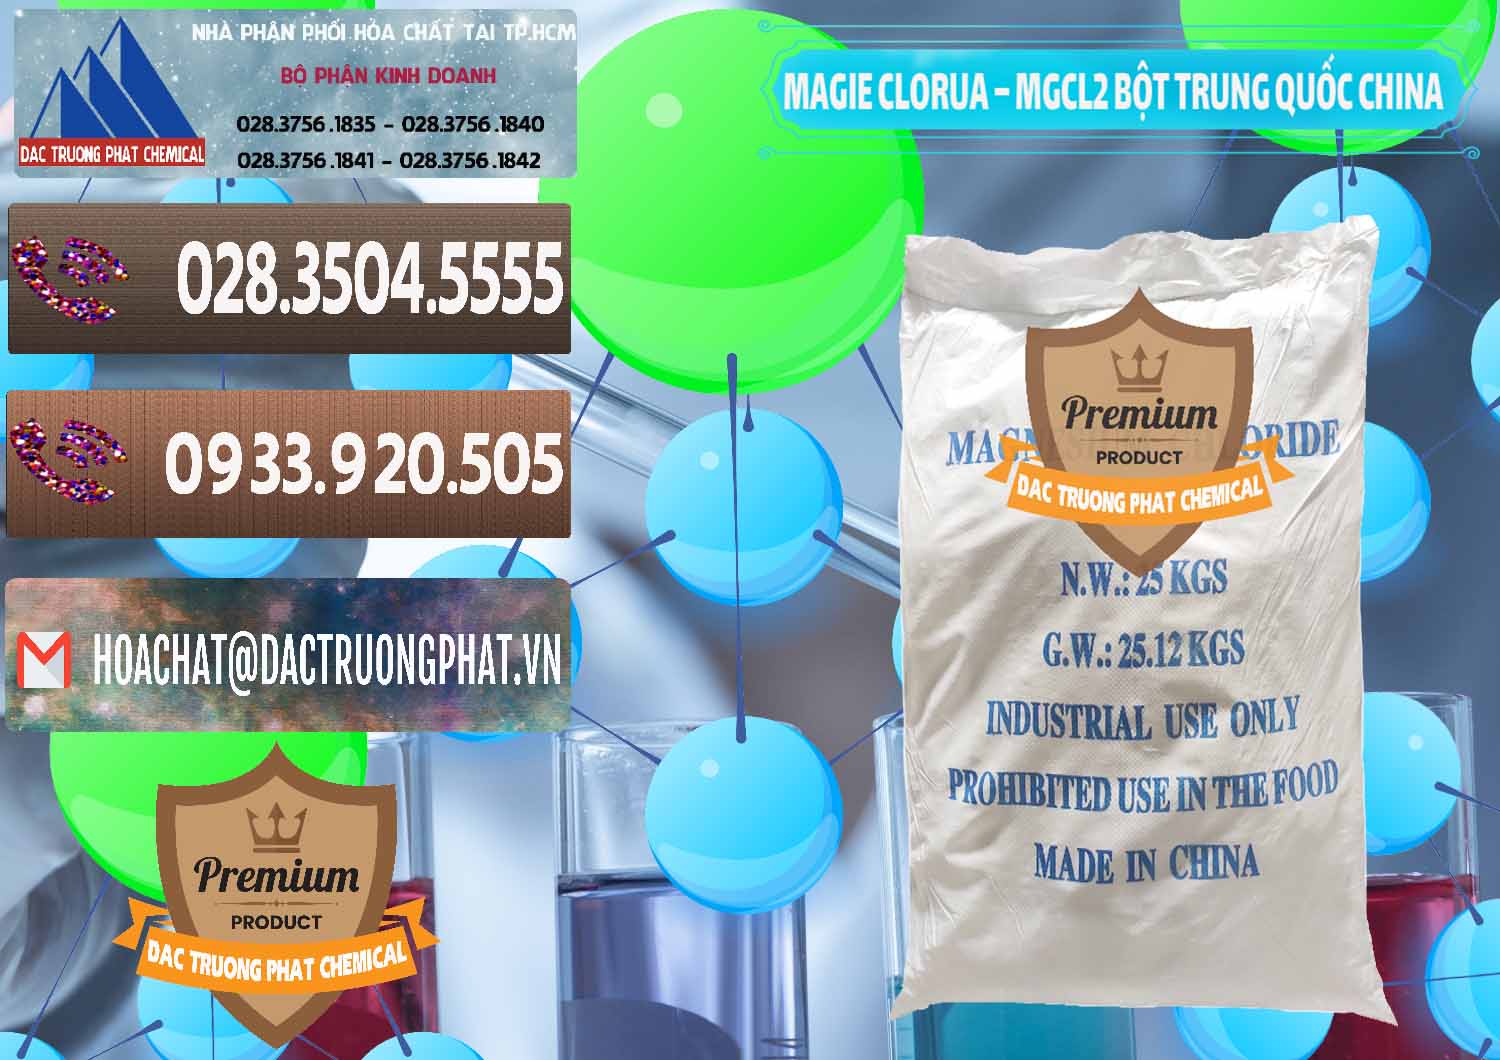 Nơi cung ứng và bán Magie Clorua – MGCL2 96% Dạng Bột Bao Chữ Xanh Trung Quốc China - 0207 - Đơn vị chuyên kinh doanh ( phân phối ) hóa chất tại TP.HCM - hoachatviet.net